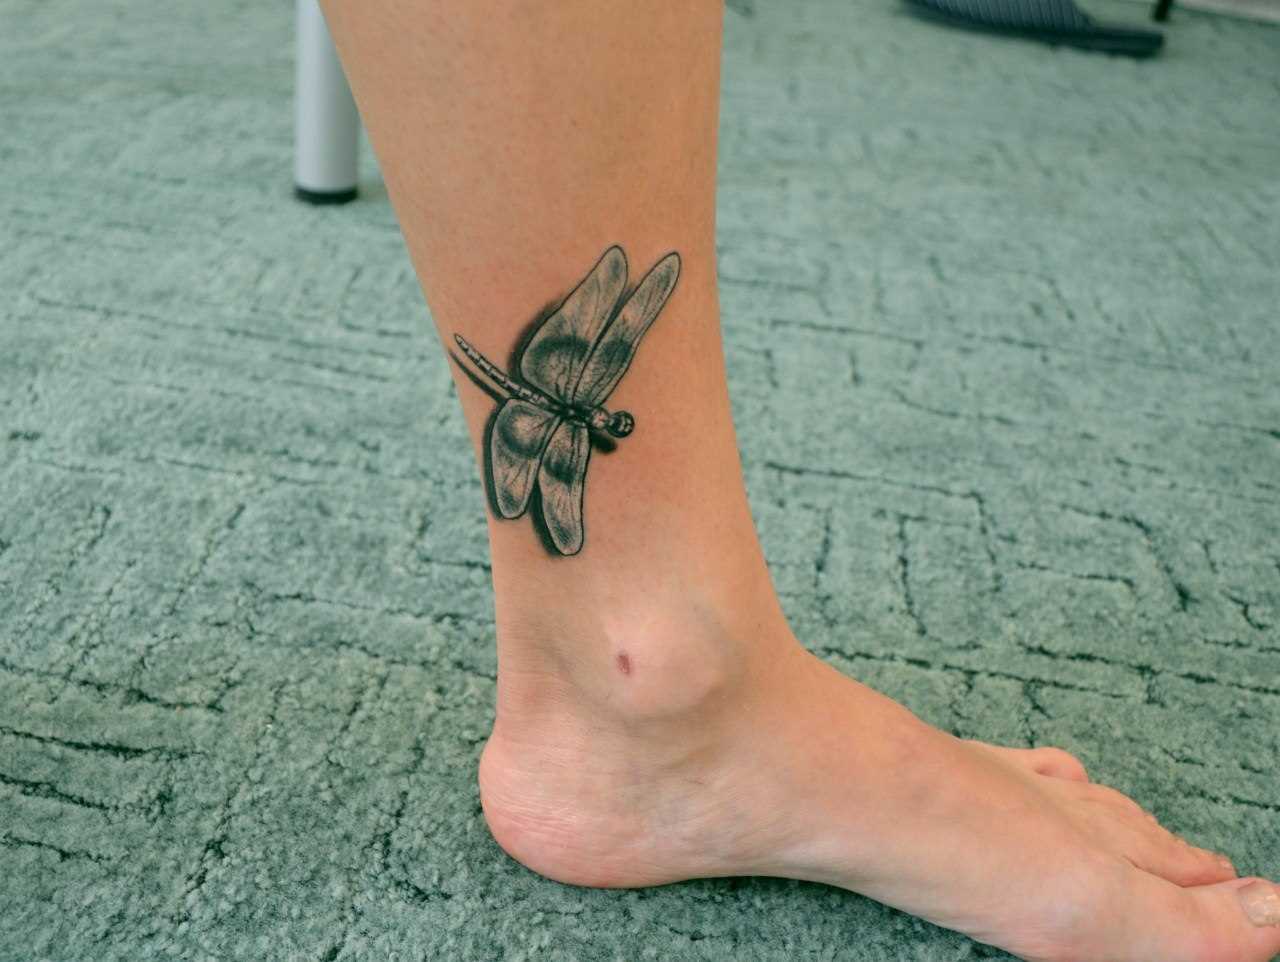 Tatuagem na perna da menina - libélula